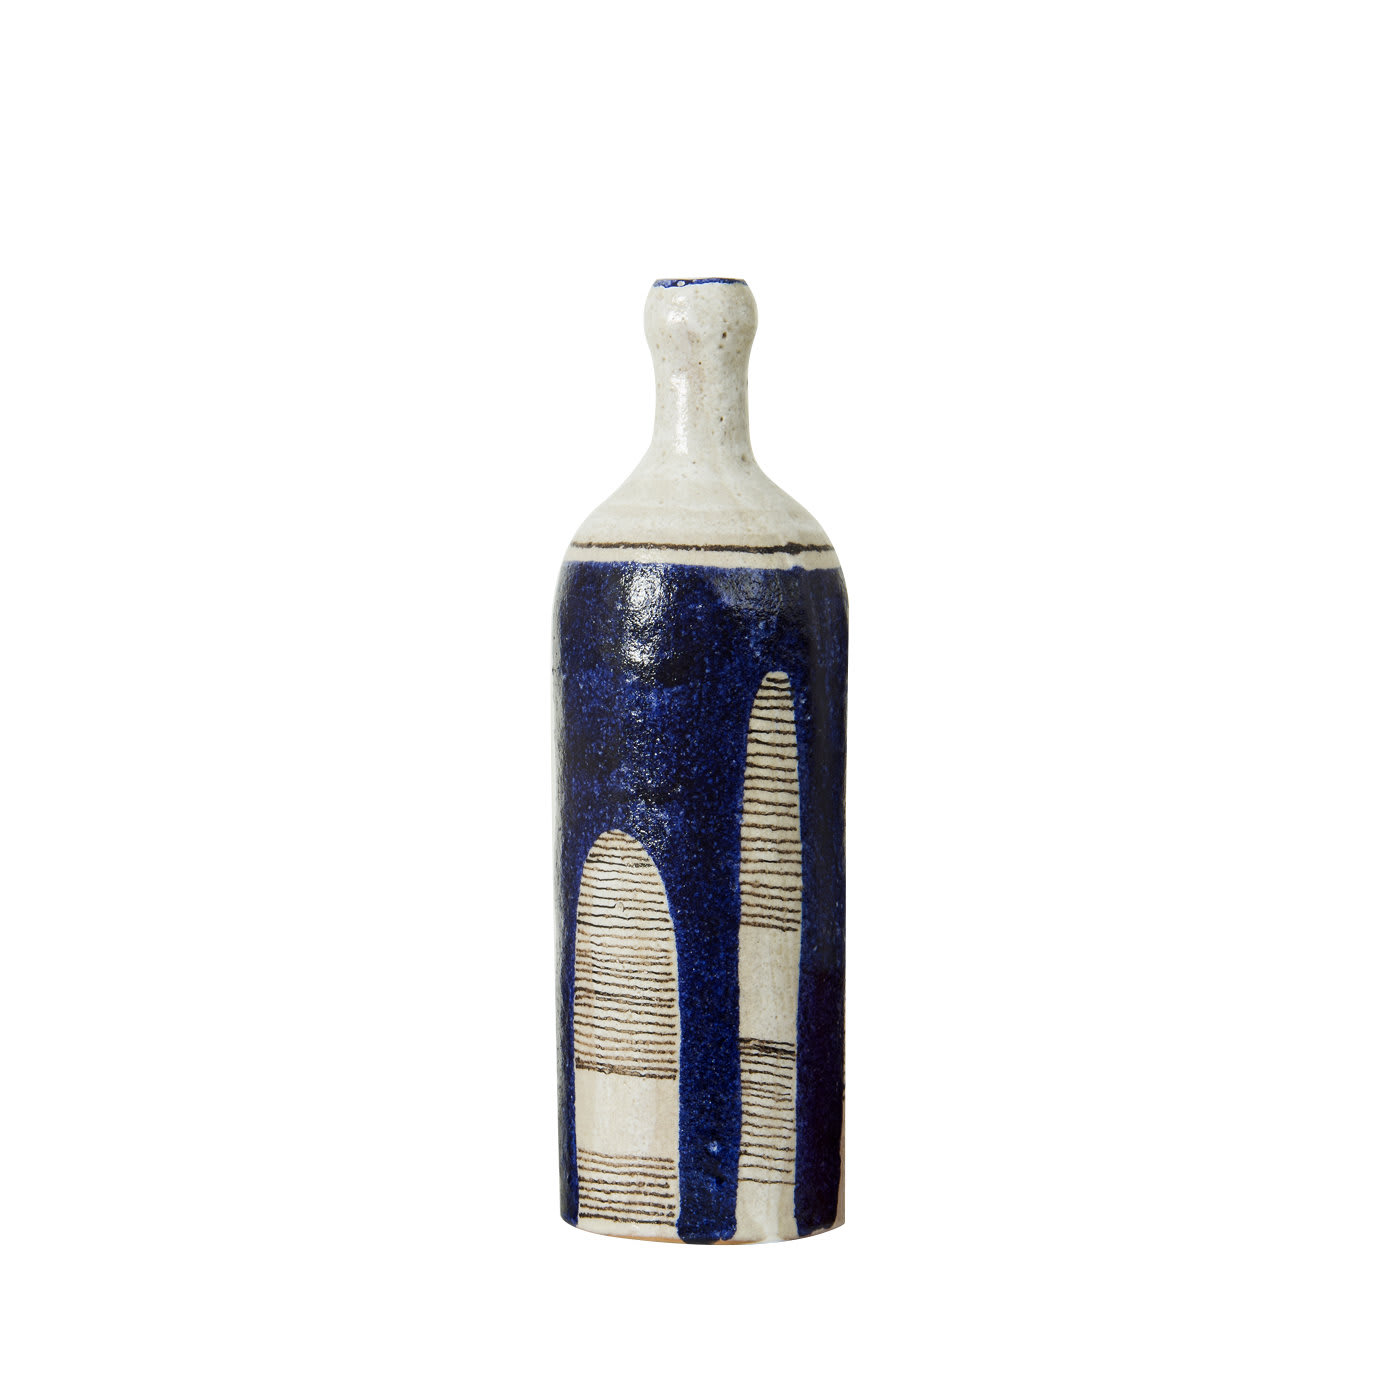 White and Blue Bottle - Pierfrancesco Solimene